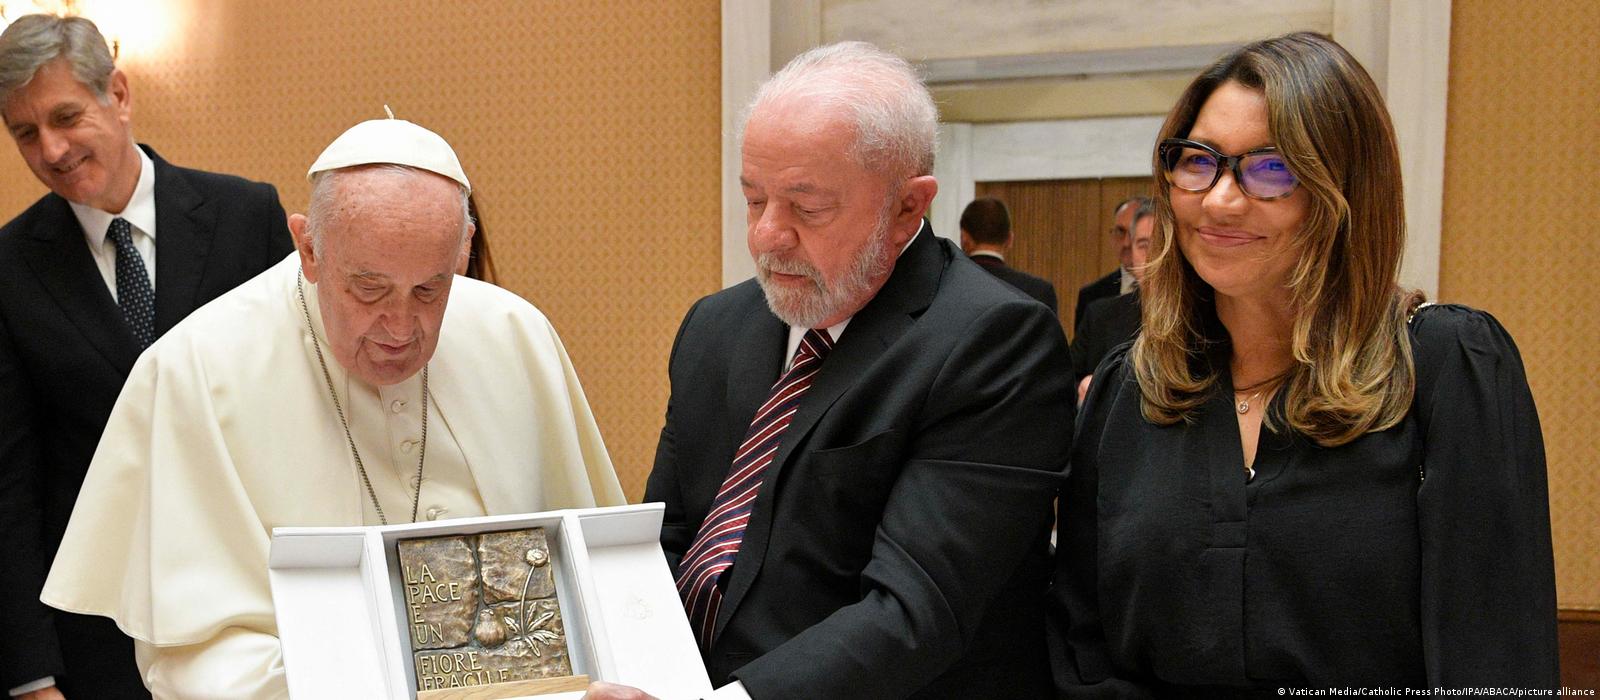 Lula parabeniza papa Francisco pelos 87 anos: “Liderança